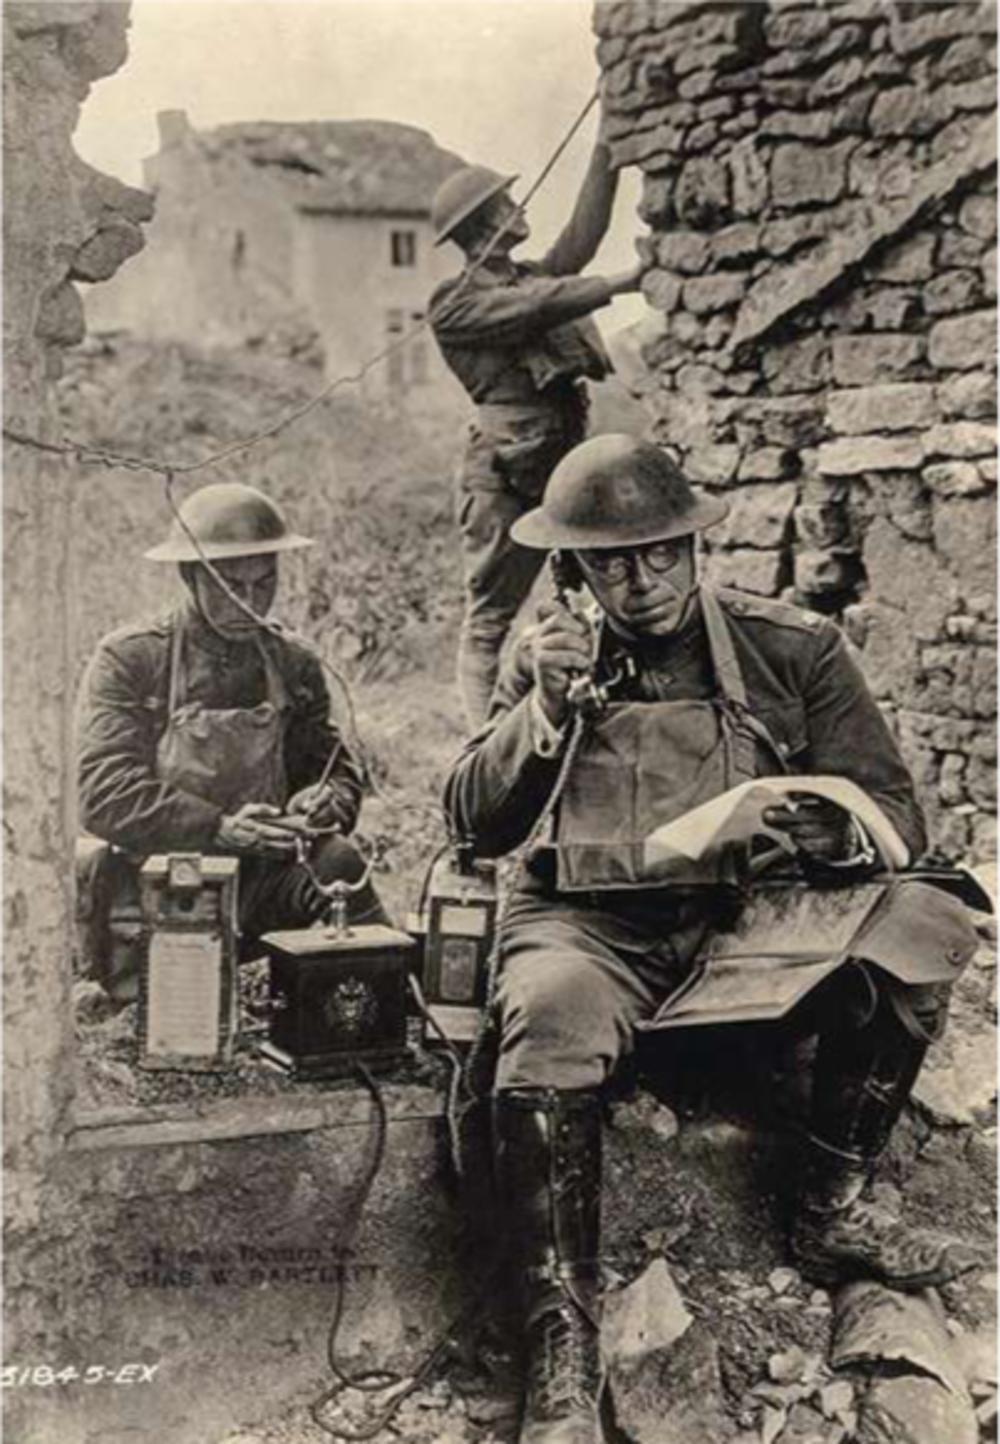 Amerikaanse officier test een door de Duitsers achtergelaten veldtelefoon na de gevechten bij Saint-Mihiel, september 1918. Hoewel de Amerikaanse aanvalsoperatie vlekkeloos verloopt, is duidelijk dat logistiek de zaken nog niet op punt staan.